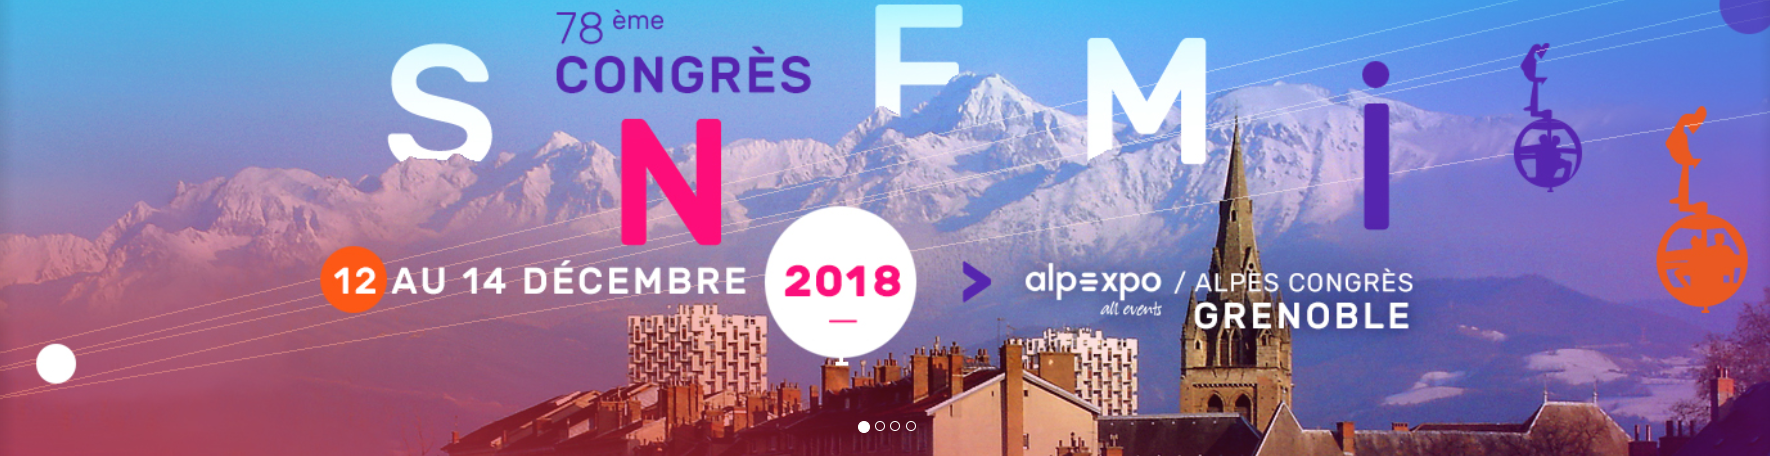 77ème congrès de la SNFMI - Franco-Maghrébin 2018